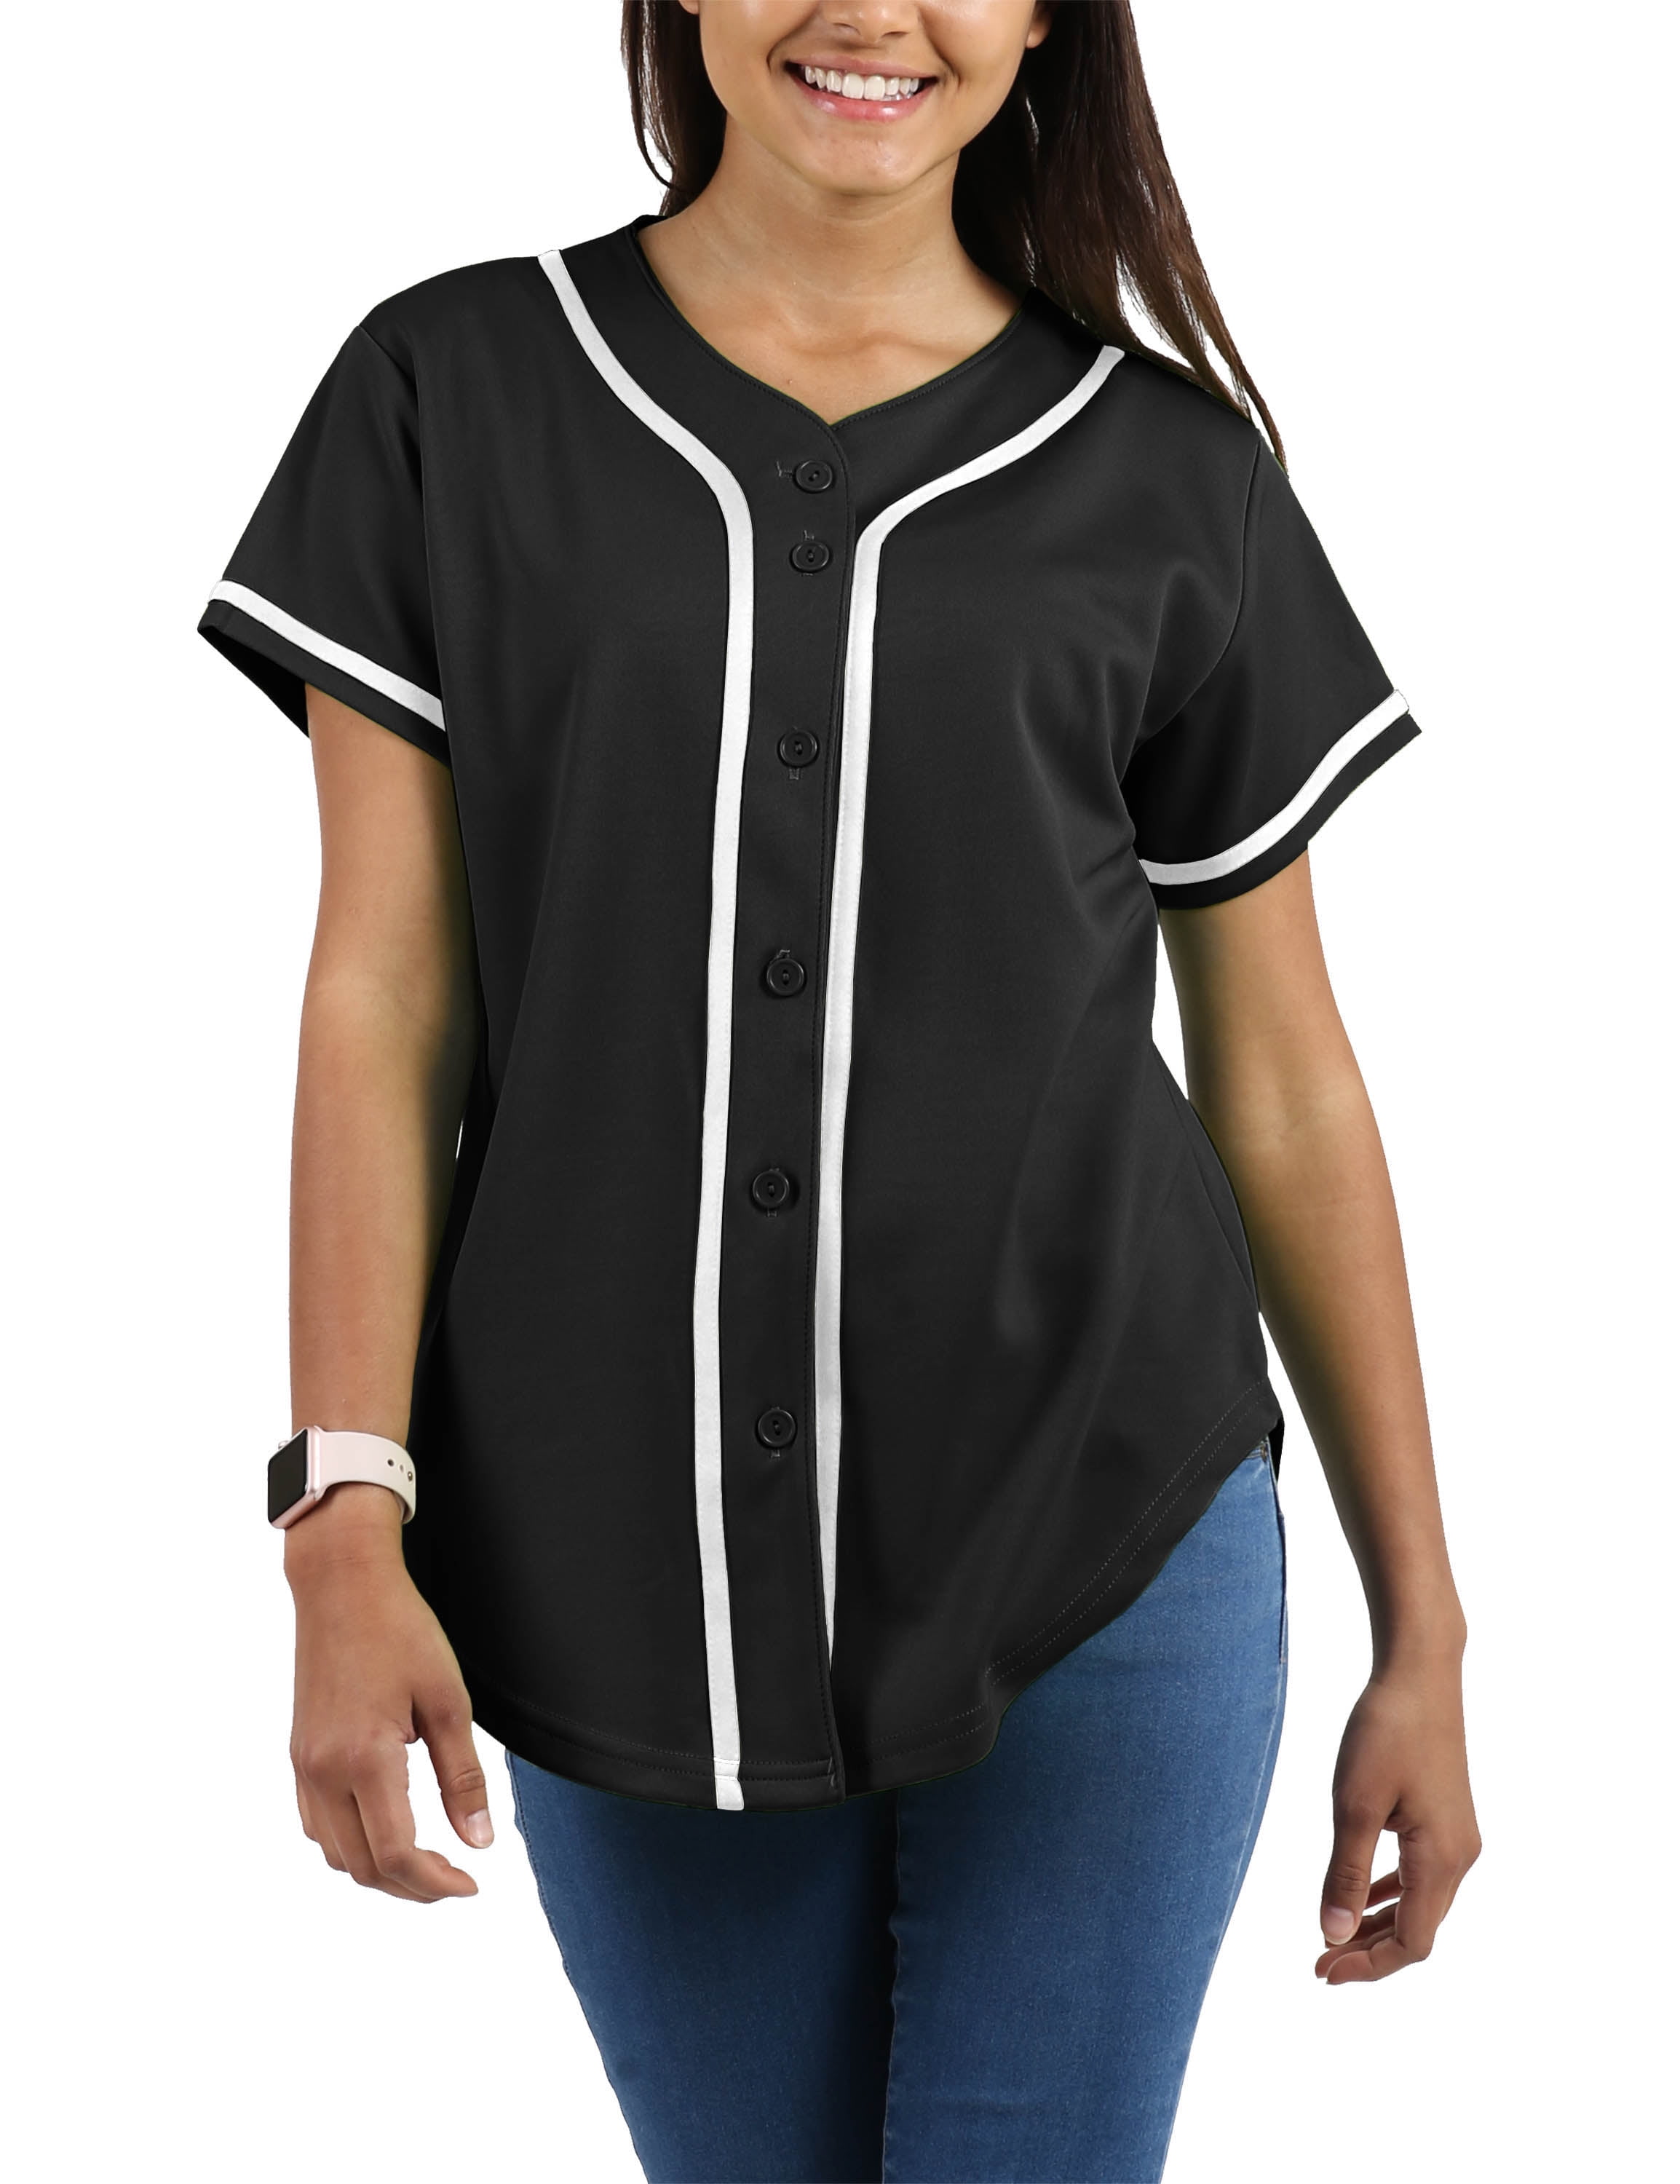 Blank Softball Team Uniform Hip Hop Hipster Short Sleeve Active Shirts oldtimetown Womens Button Down Baseball Jersey 